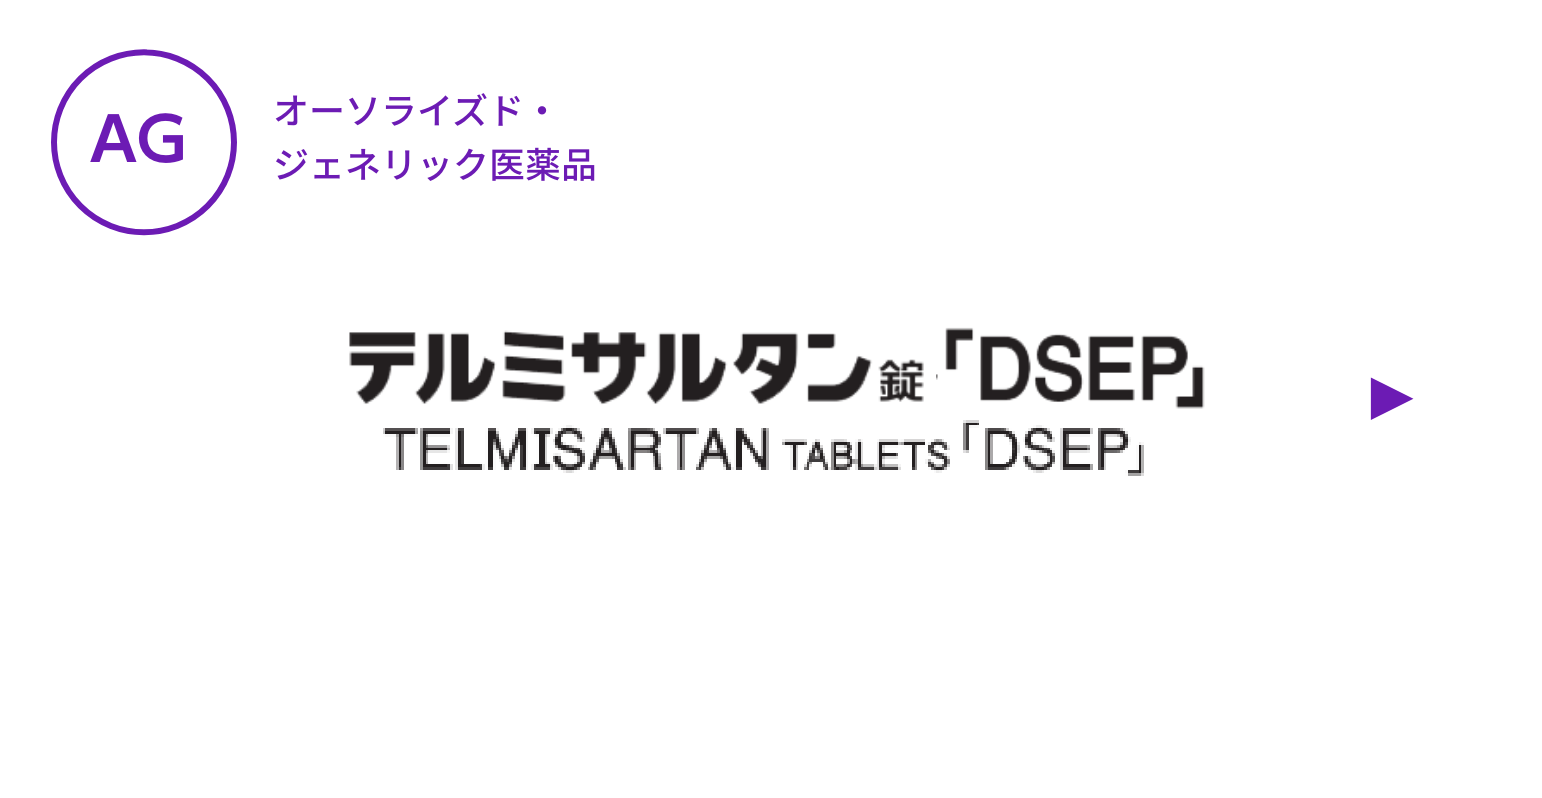 【AG】テルミサルタン錠「DSEP」